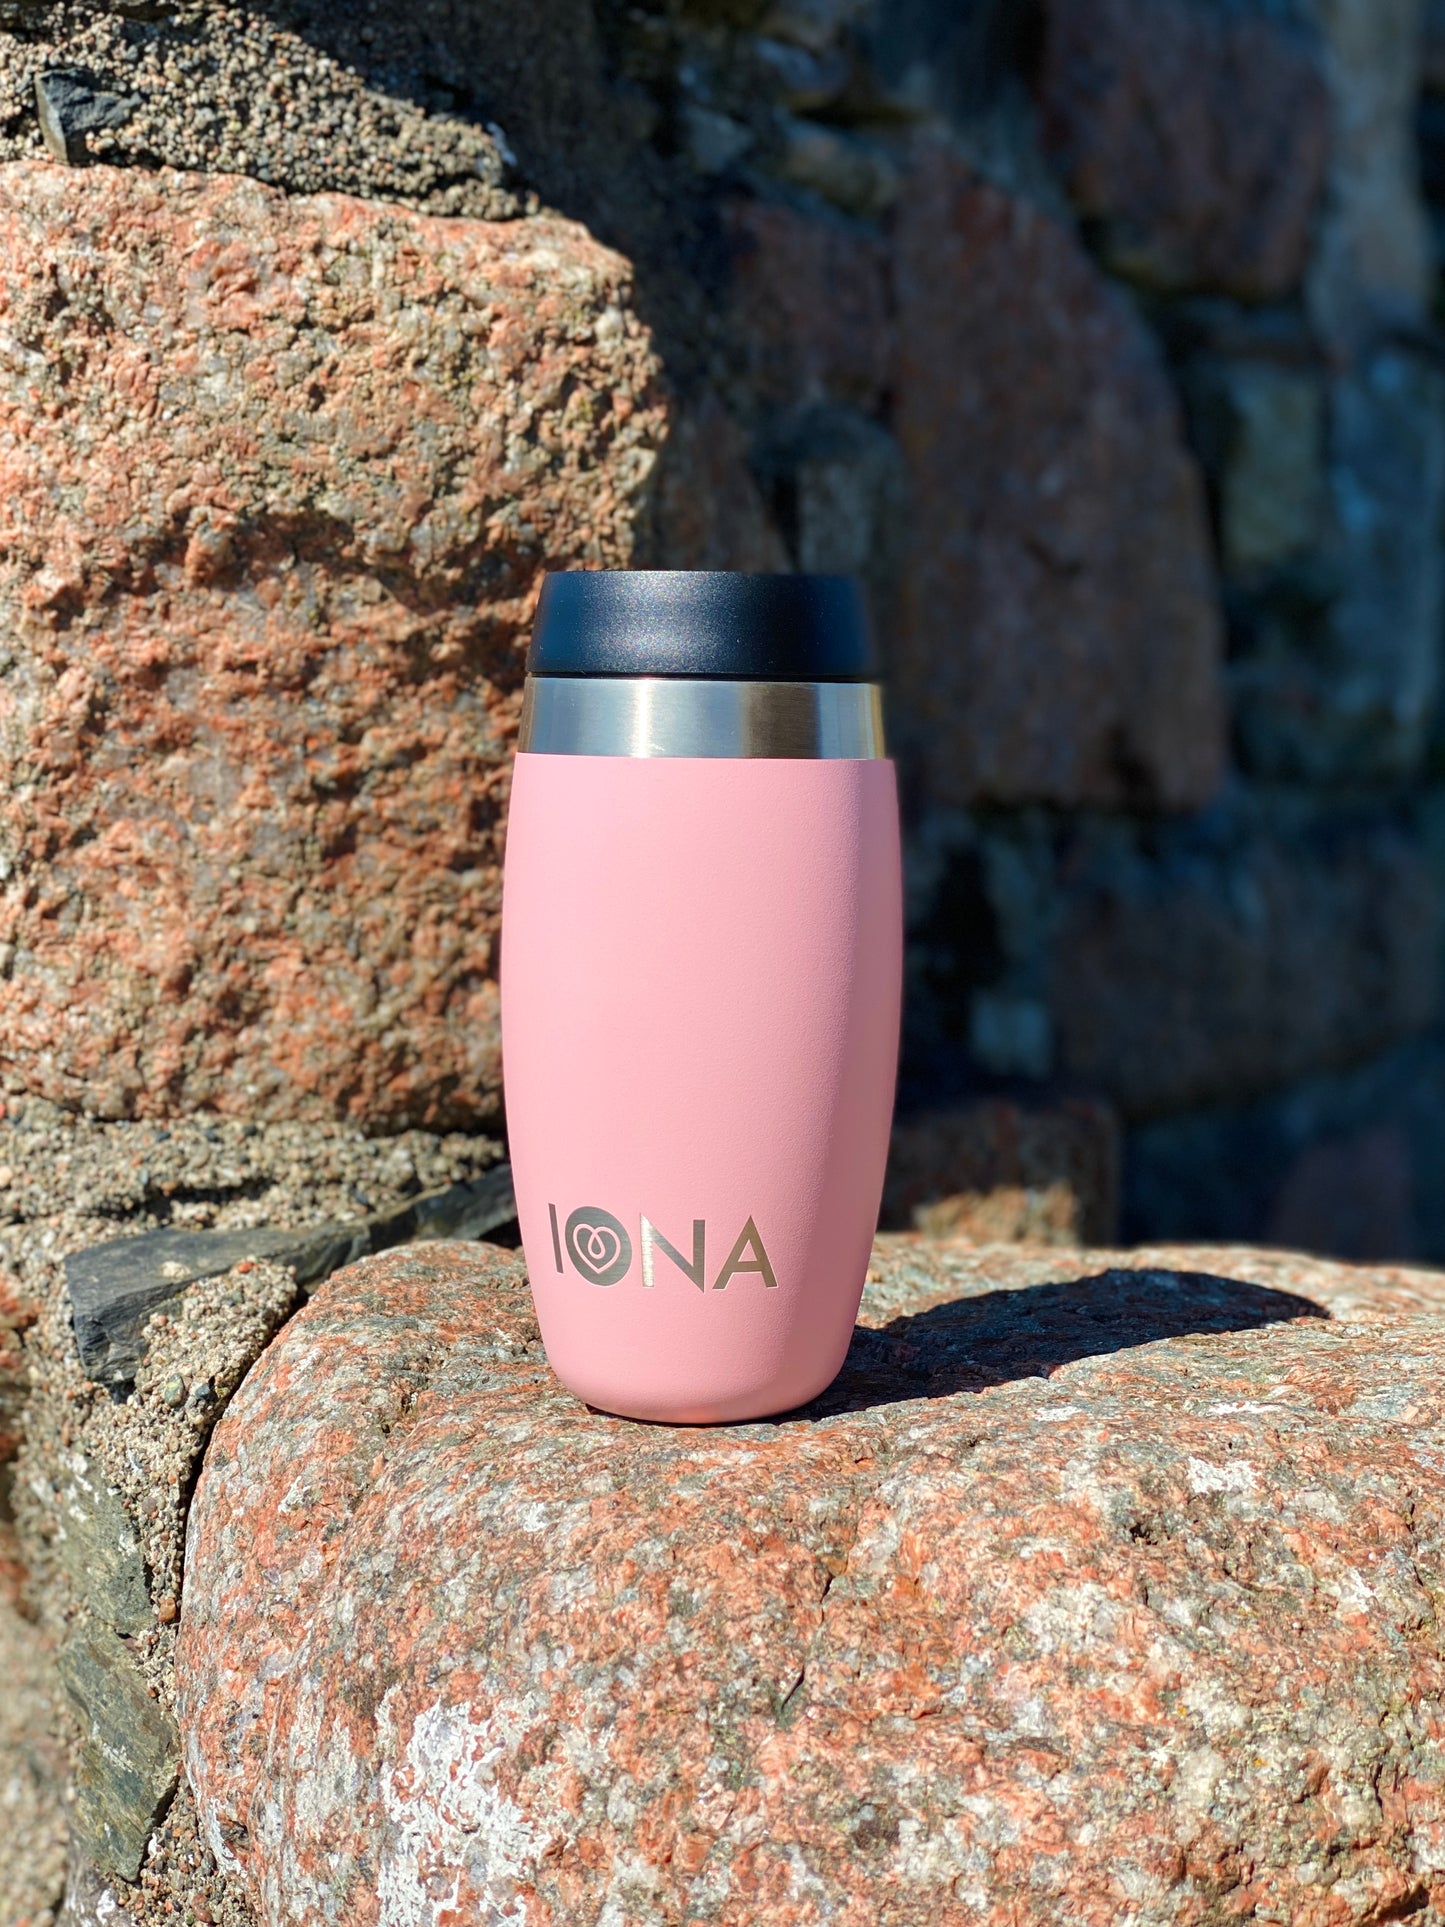 Iona Travel Mug - Pink